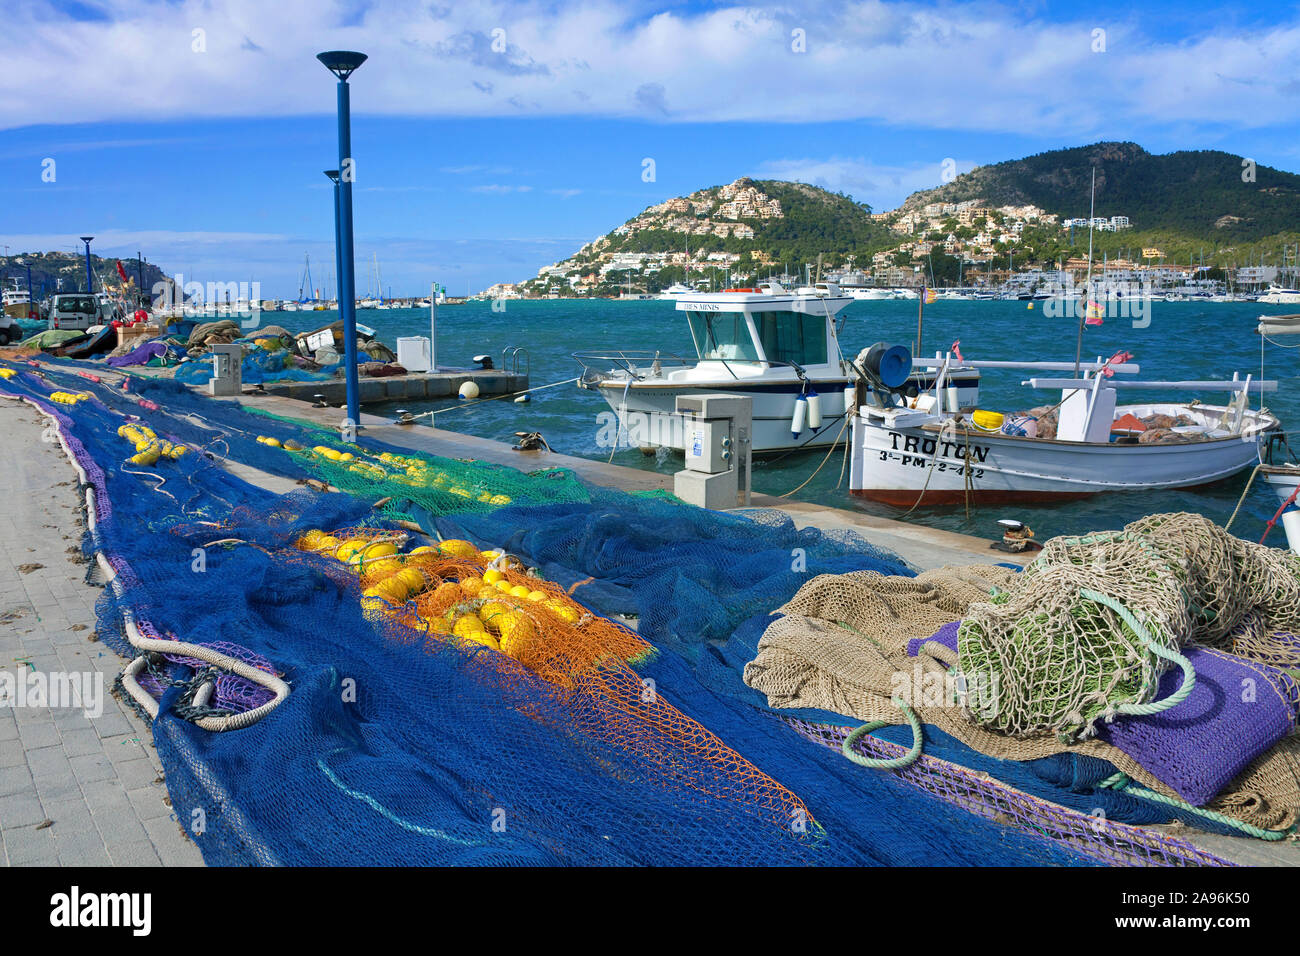 Les filets de pêche dans le port de Port d''Andtratx, Andratx, Mallorca, Baleares, Espagne Banque D'Images